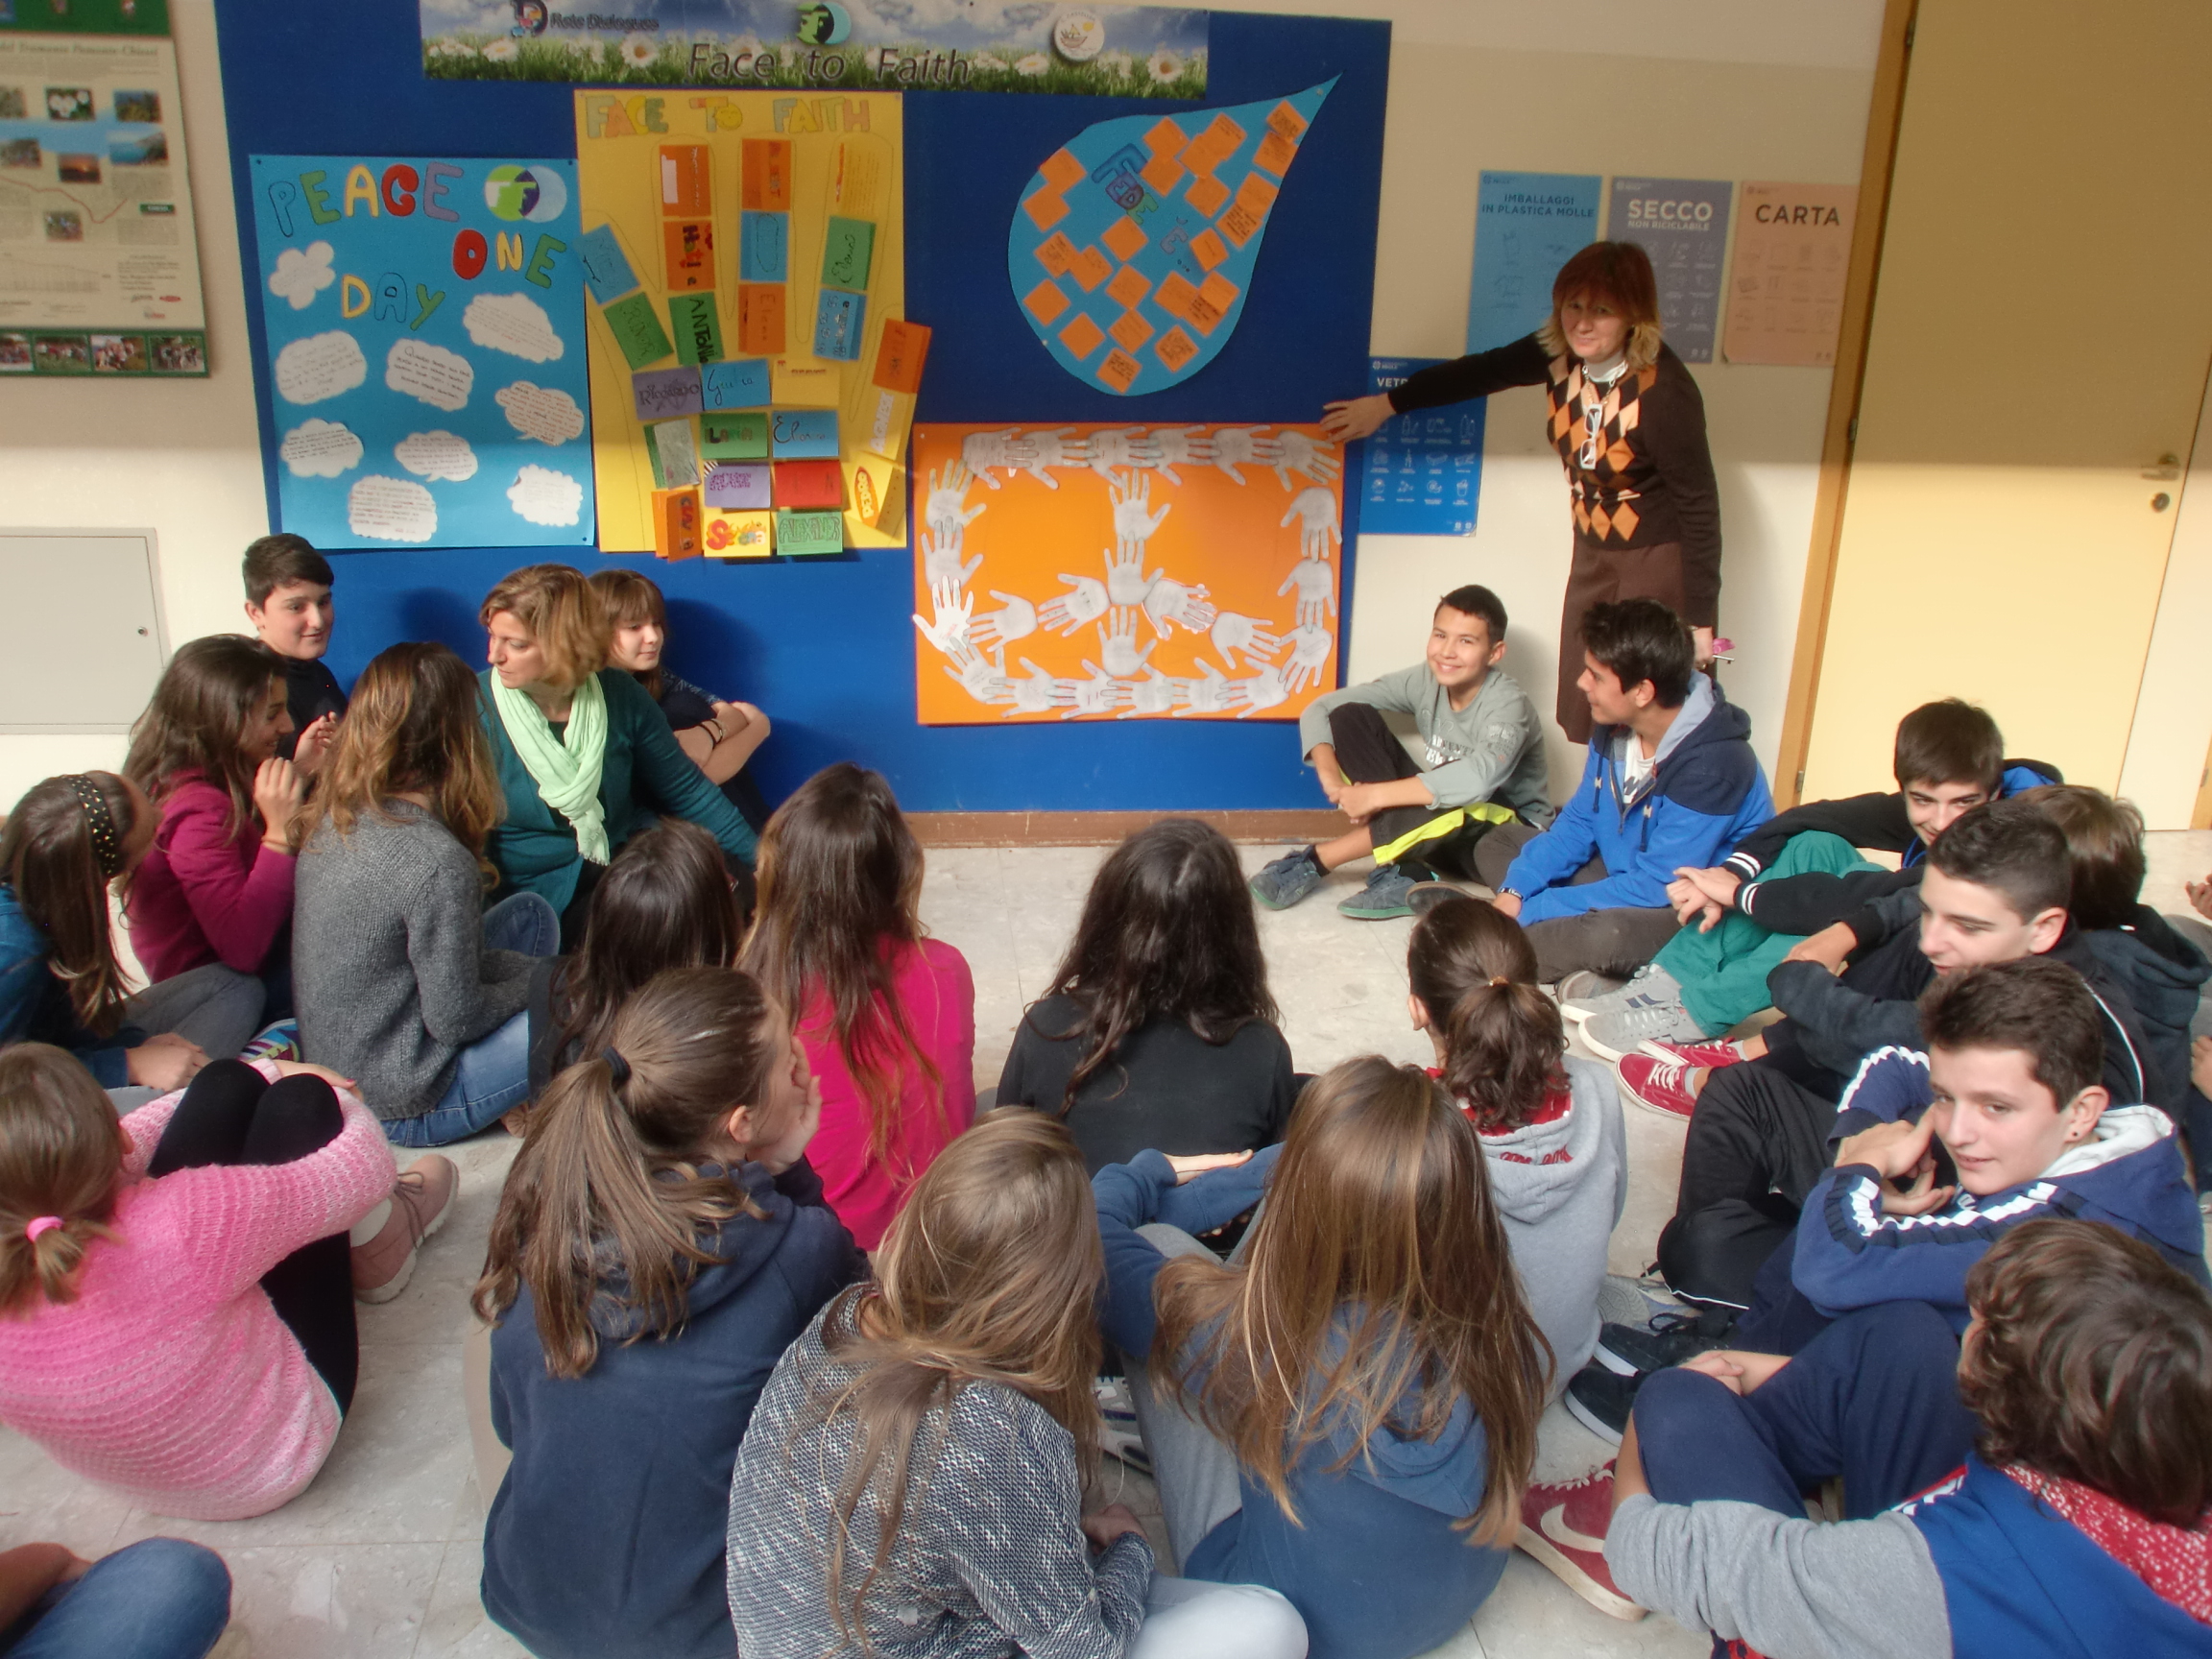 Inaugurazione bacheca Rete Dialogues – FtF nell’atrio della scuola Casteller